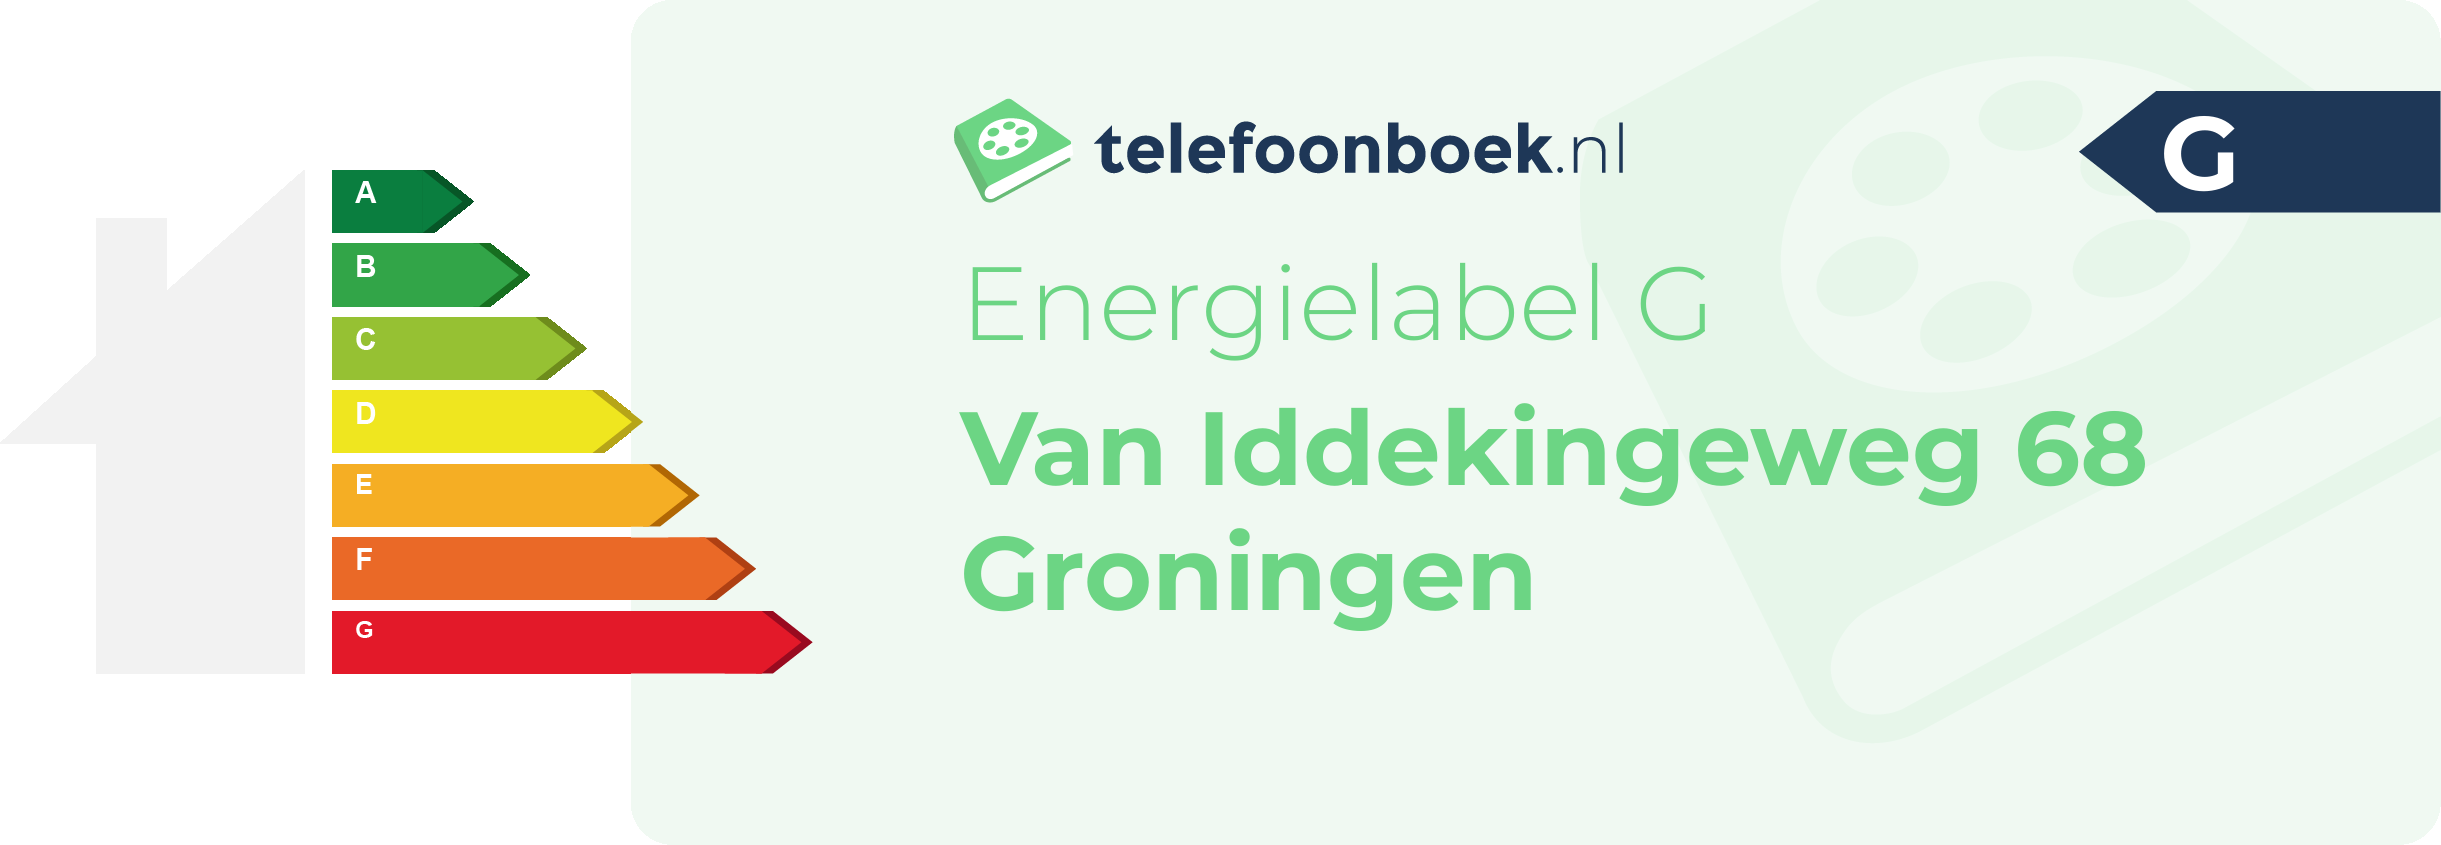 Energielabel Van Iddekingeweg 68 Groningen